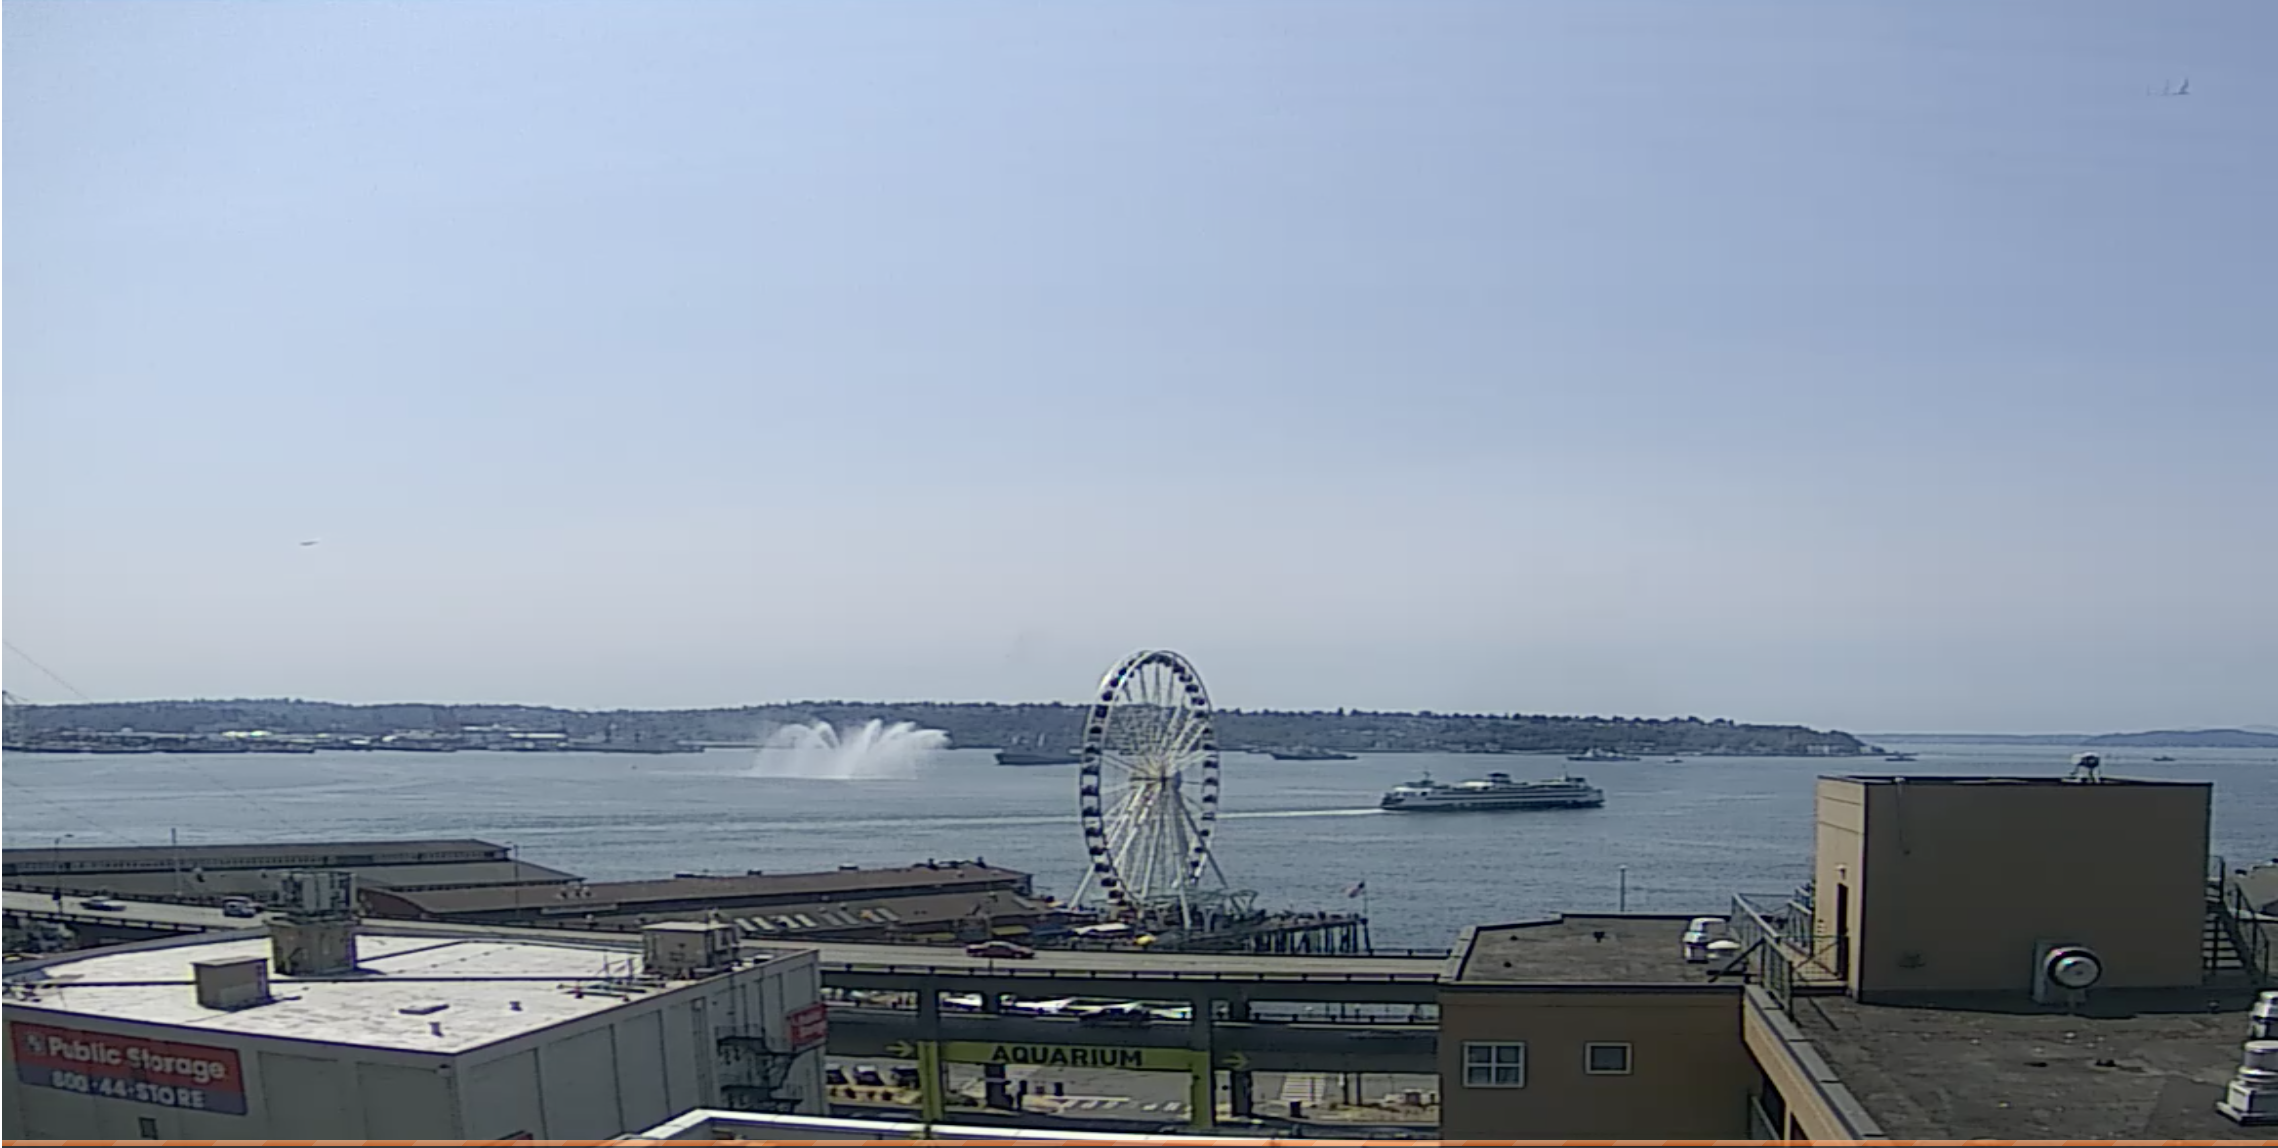 Seattle Waterfront Webcam Fleet Week Fire Boat and Ferry 07 31 2018